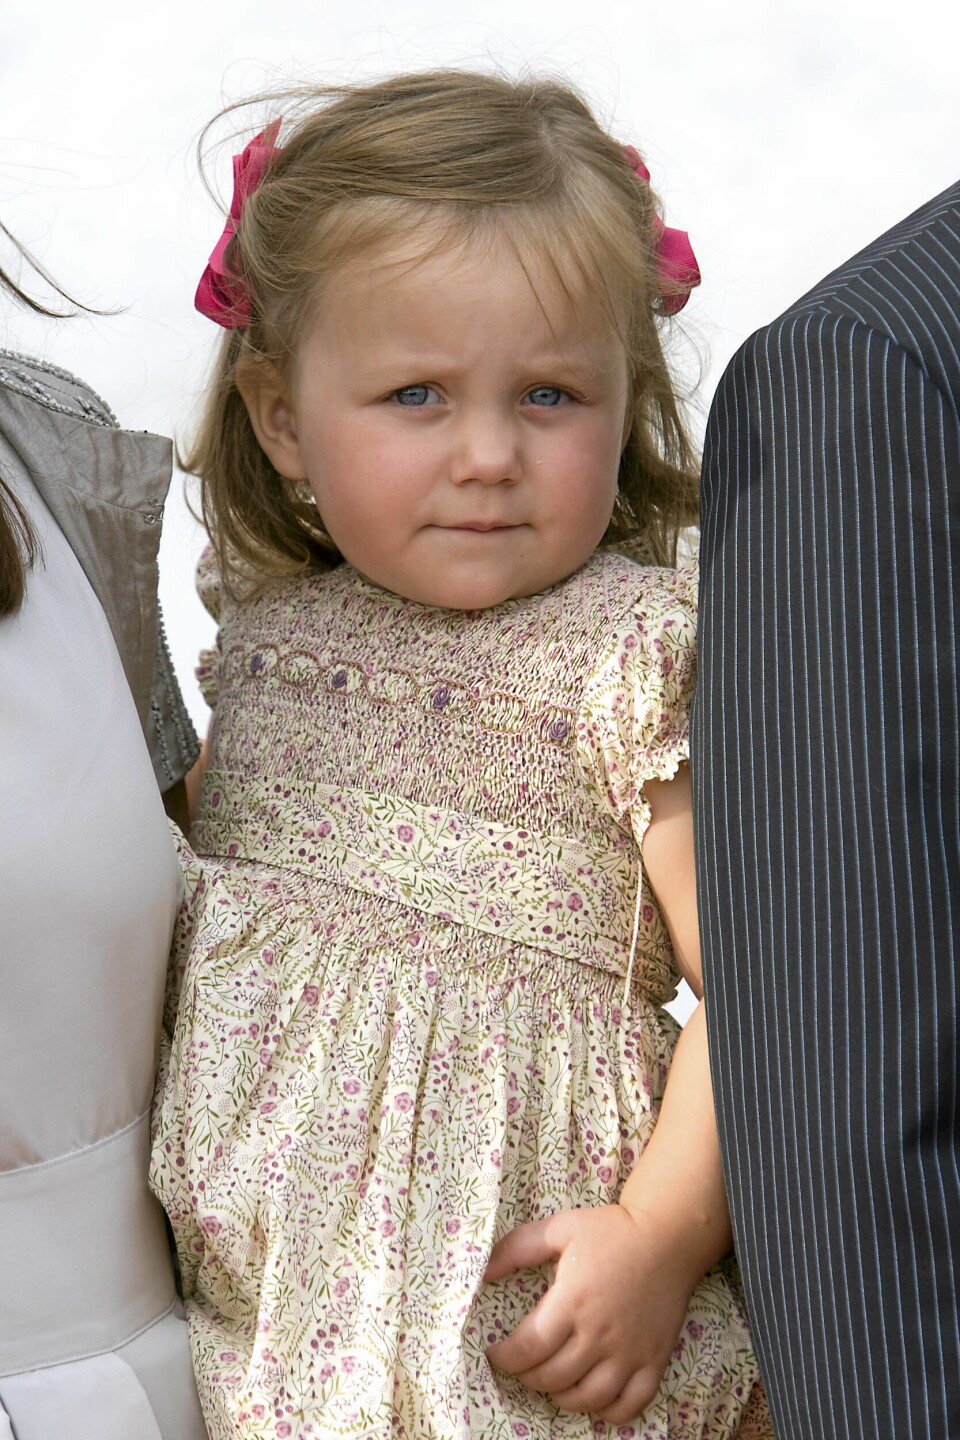 Her var Prinsesse Isabella til kongelig barnedåb i Møgeltønder Kirke i anledning af Prins Henrik Carl Joachim Alains store dag.